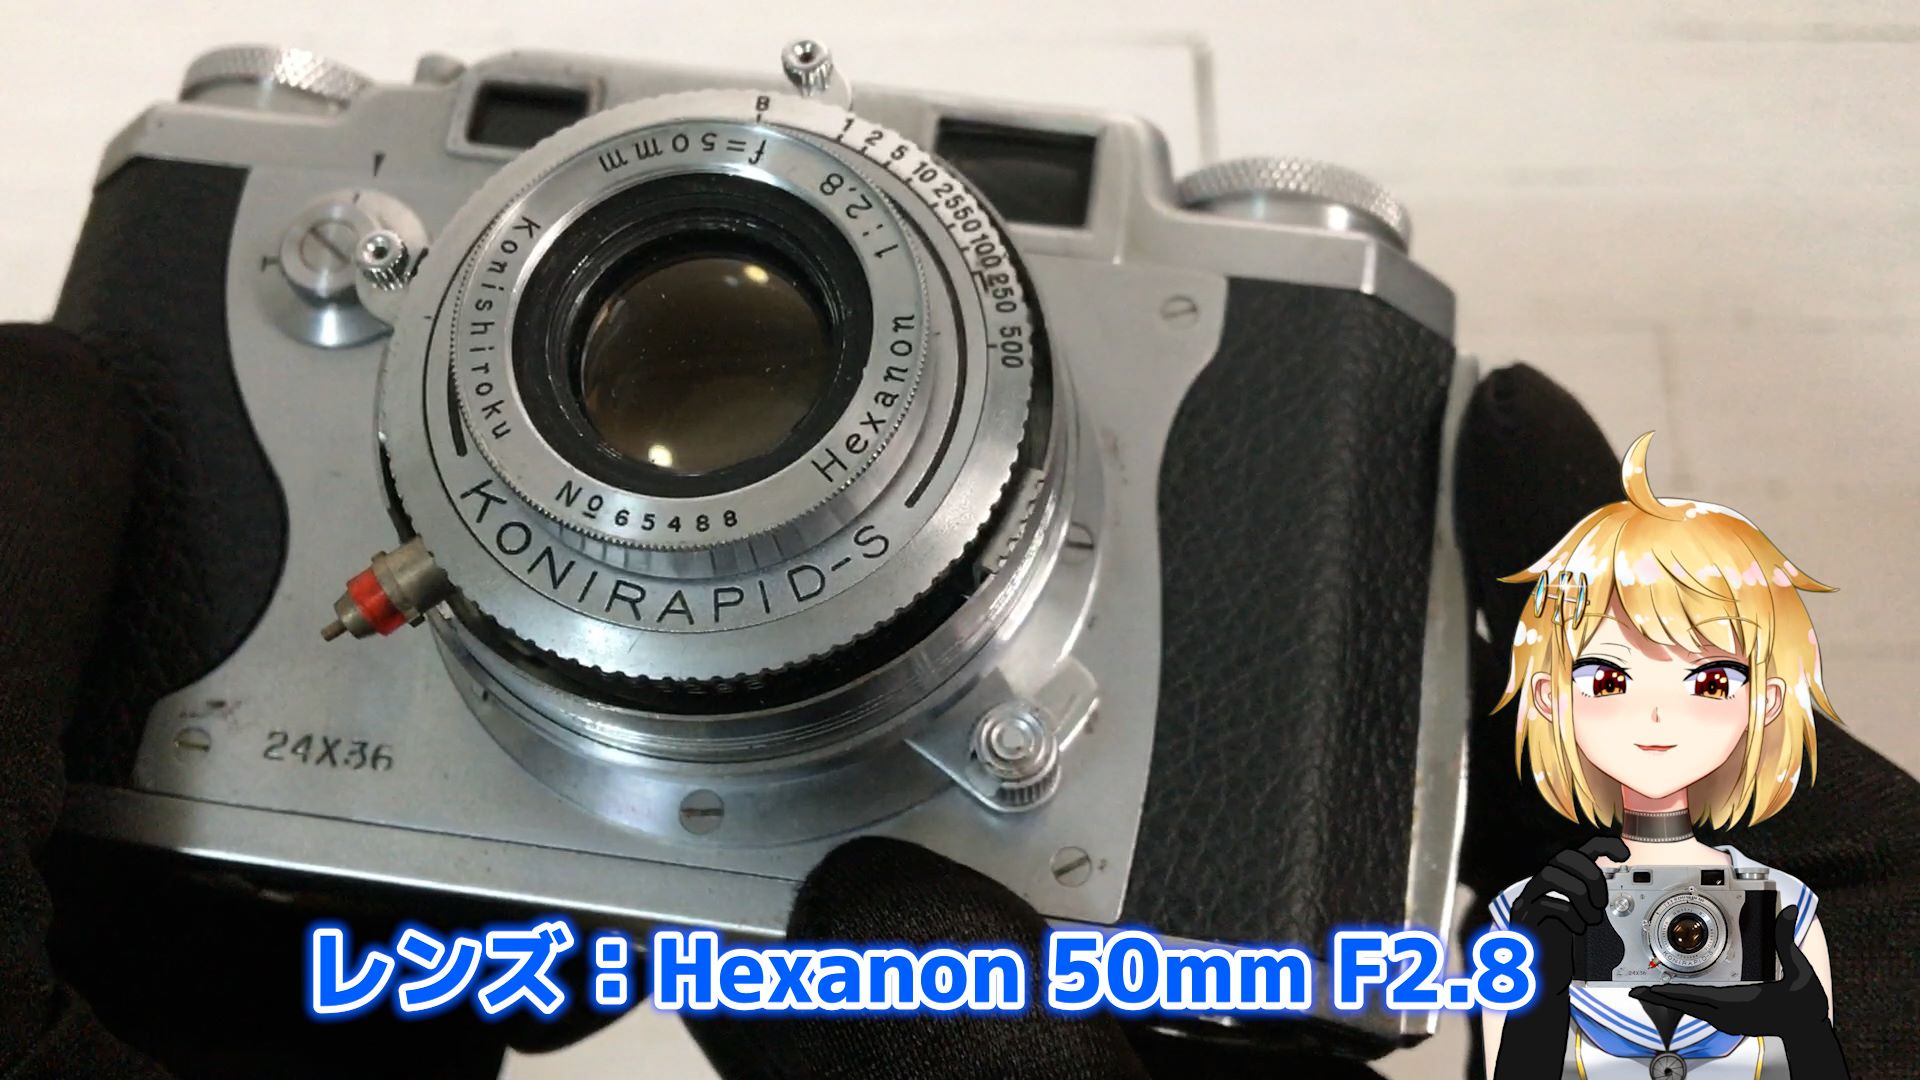 Konica II型 シンプルで良質なレンズシャッターカメラ – 御部スクラ ...